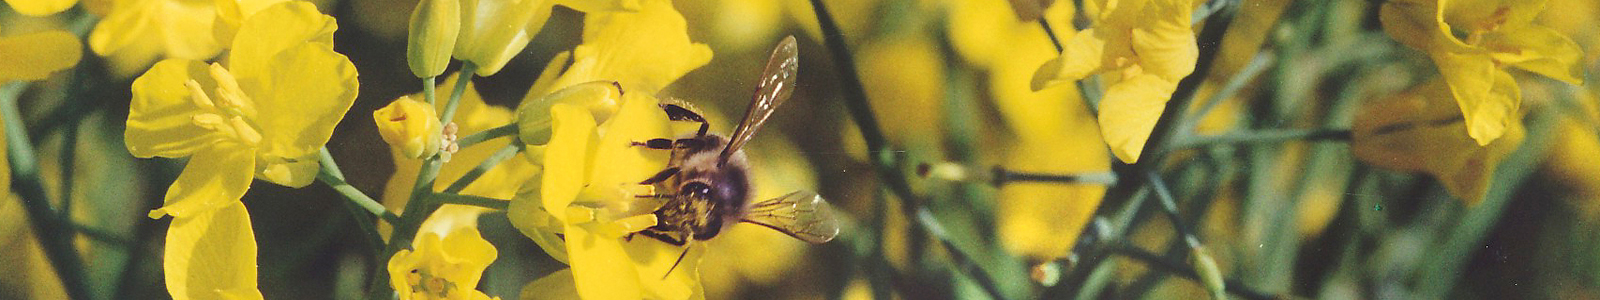 Biene auf gelber Blüte ©DLR